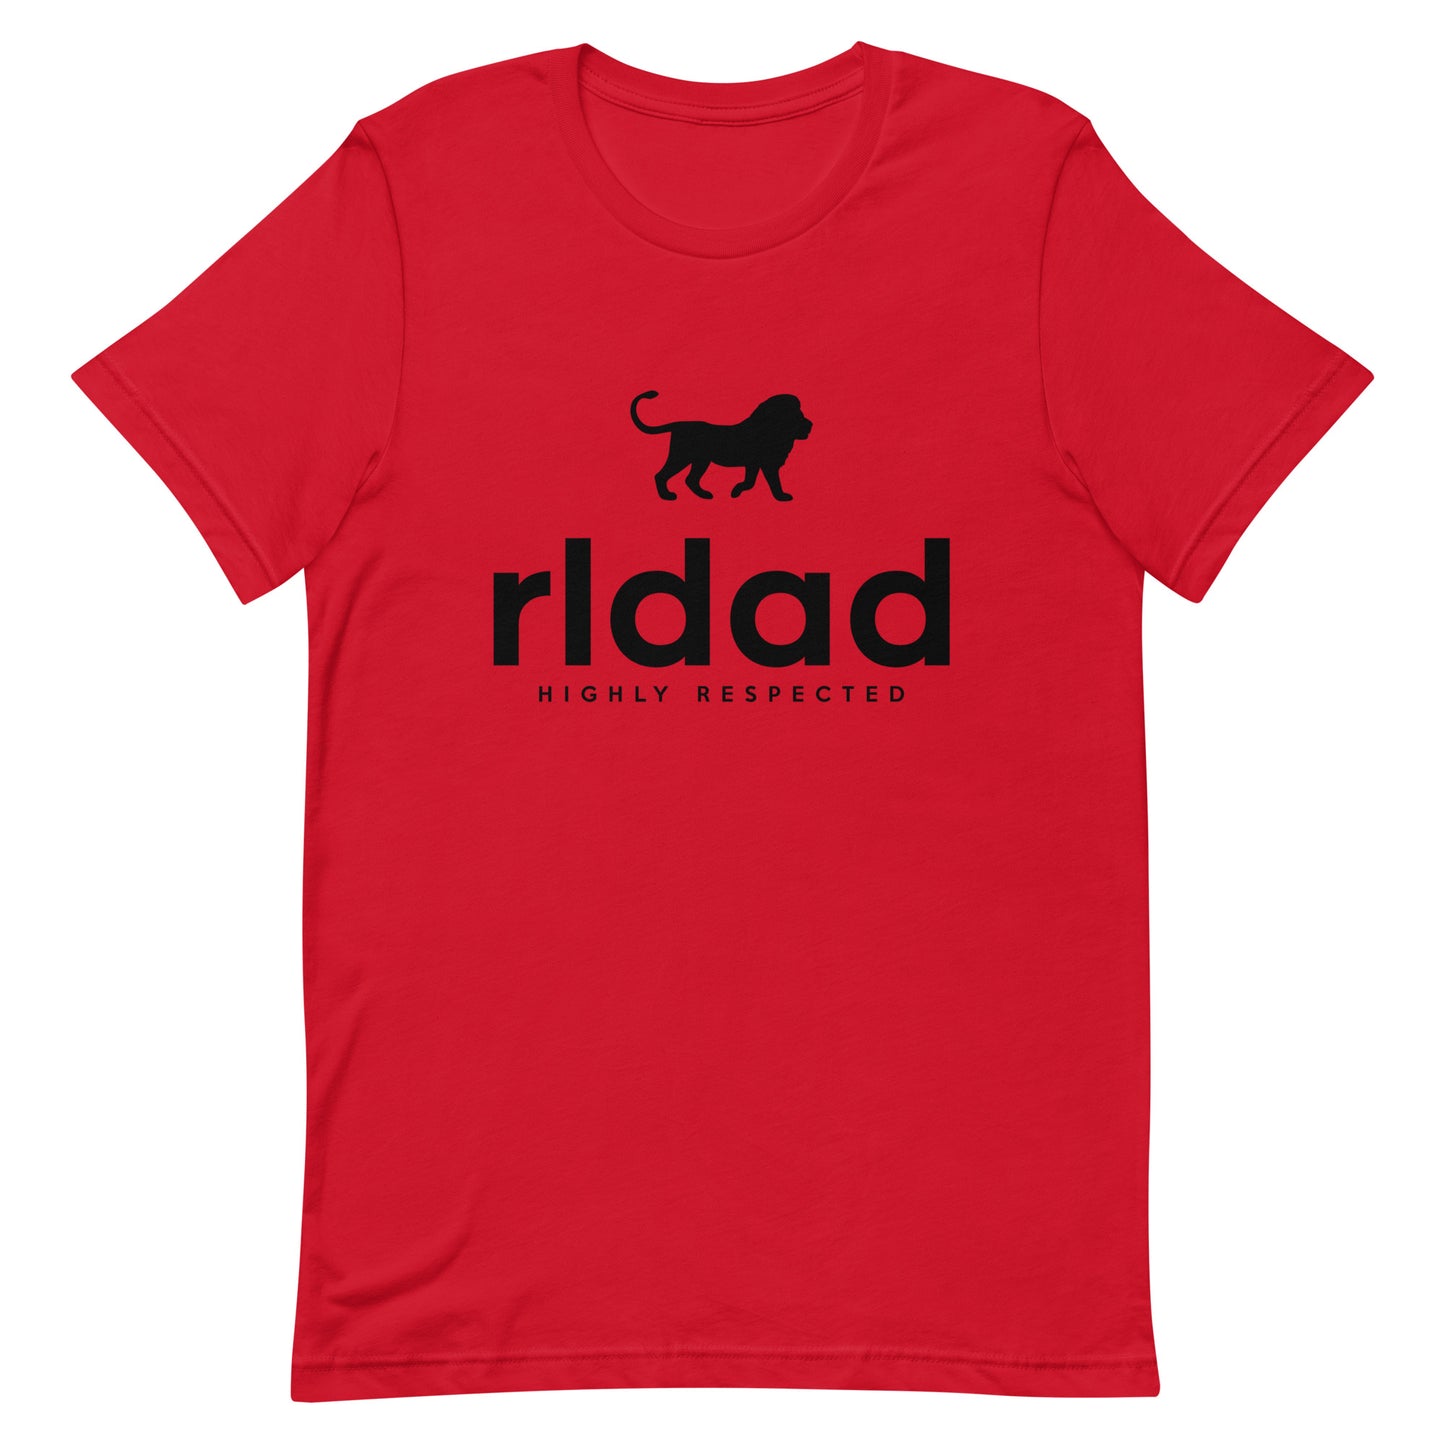 RLDAD black letter t-shirt